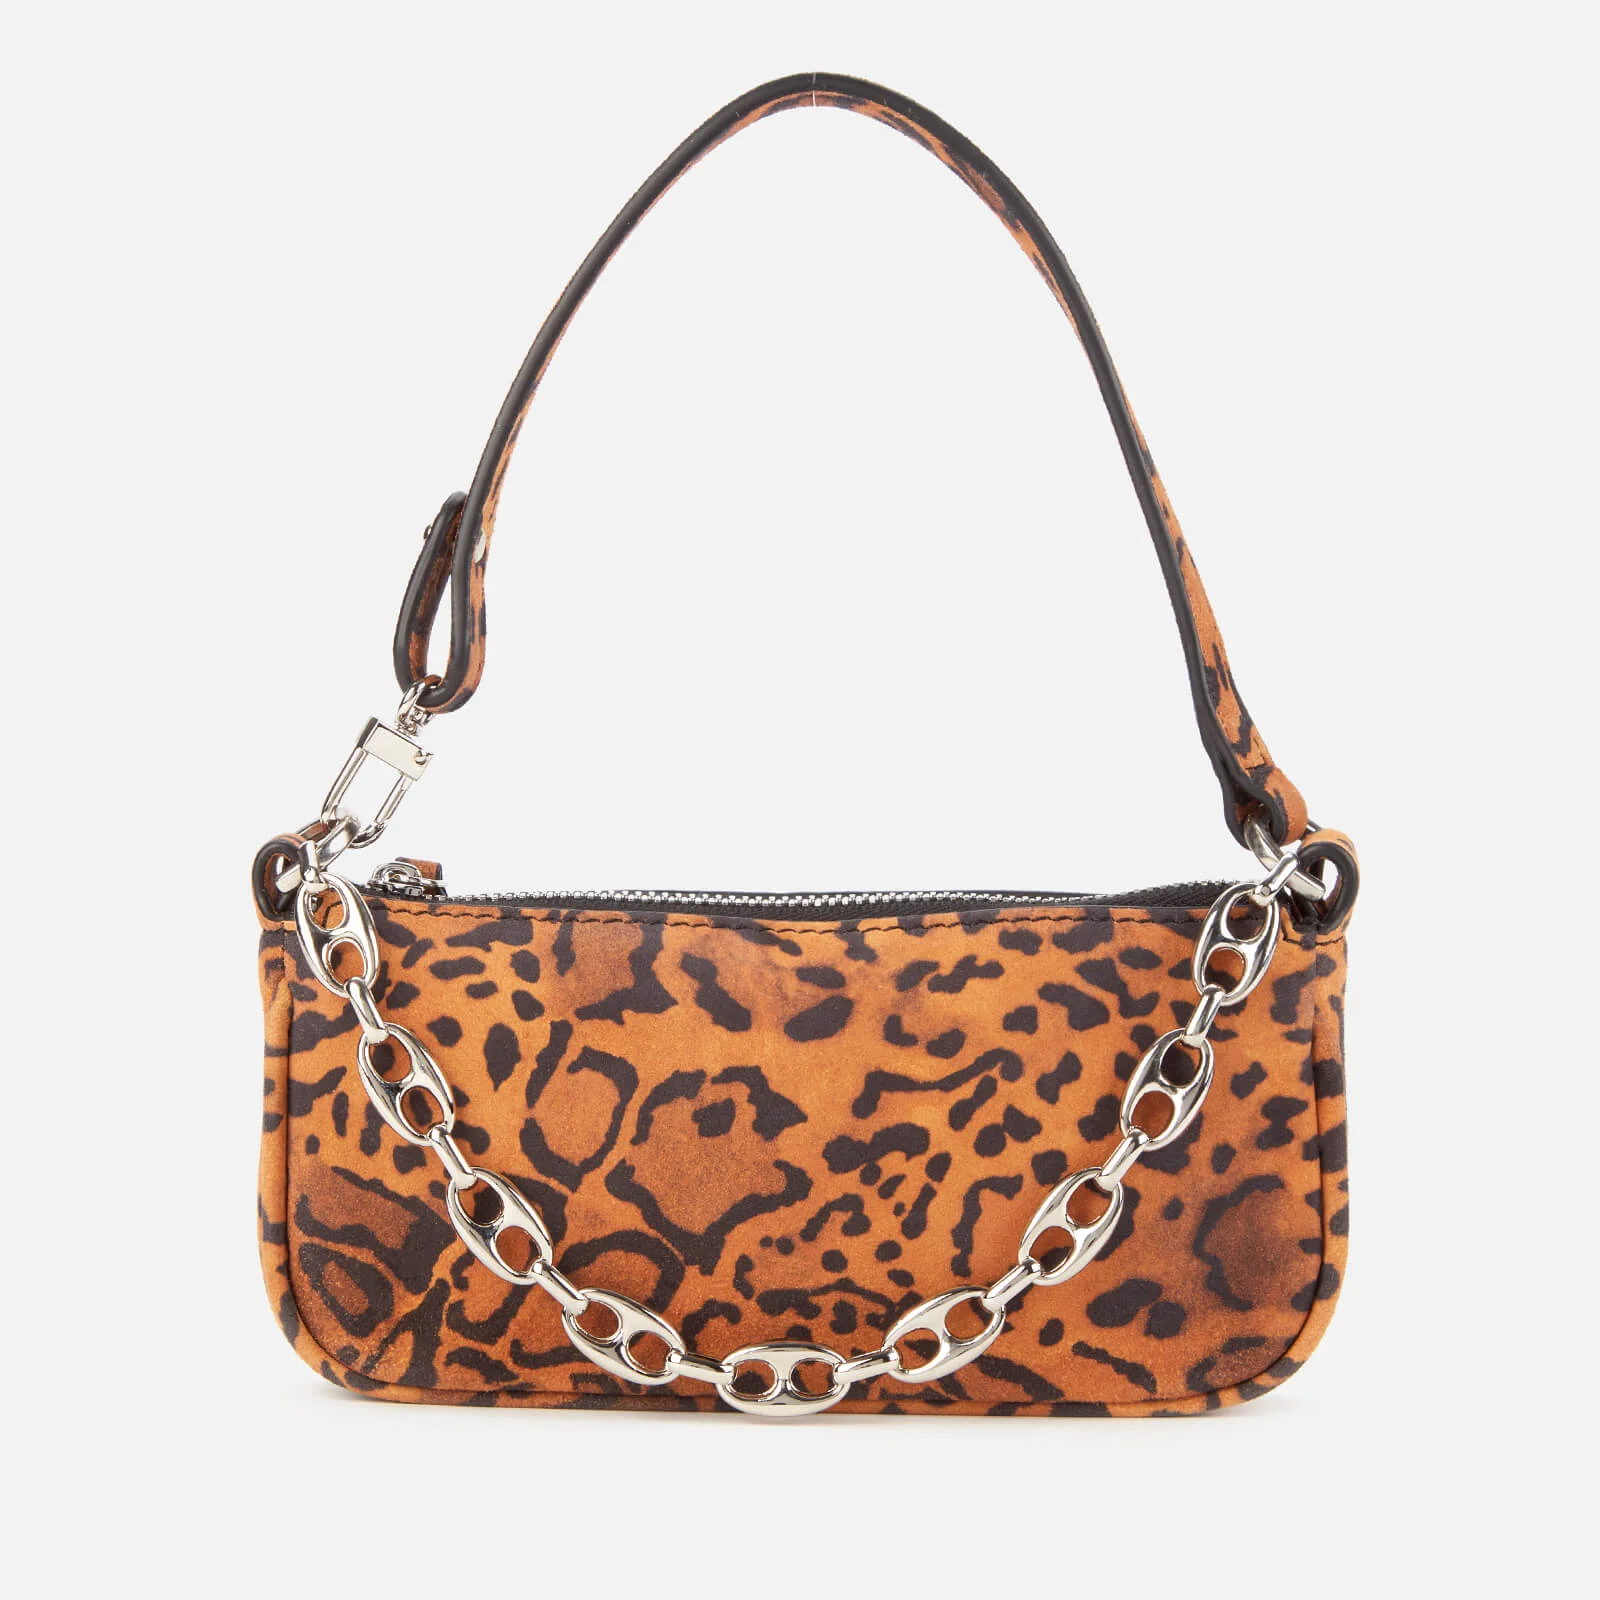 BY FAR Women's Mini Rachel Suede Shoulder Bag - Leopard Print Image 1